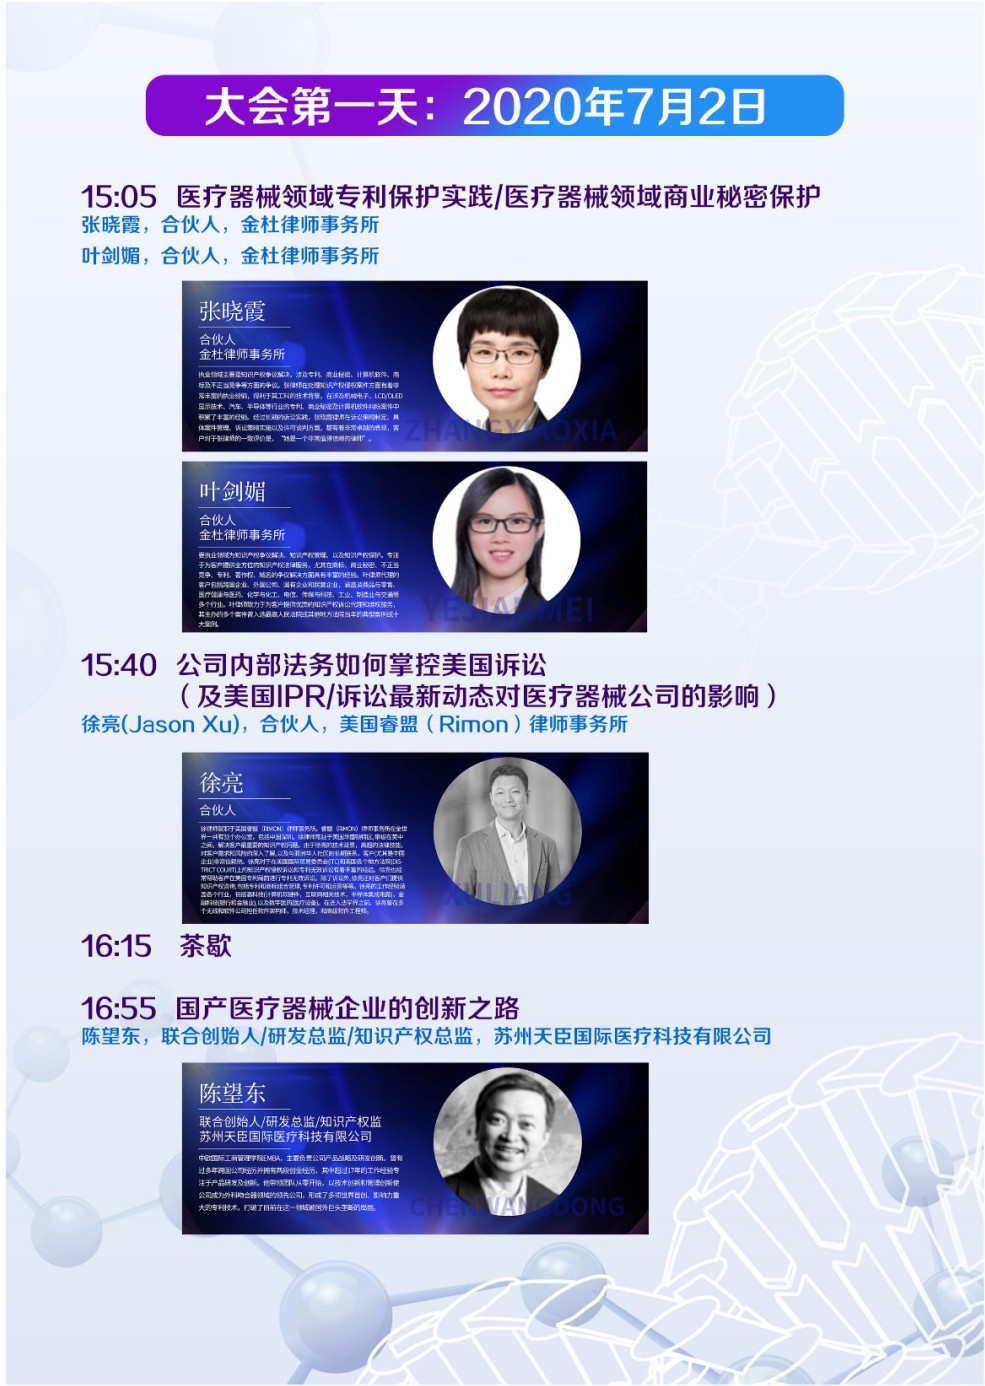 中国医疗器械知识产权峰会将于2020年7月2-3日在上海康桥万豪酒店举办